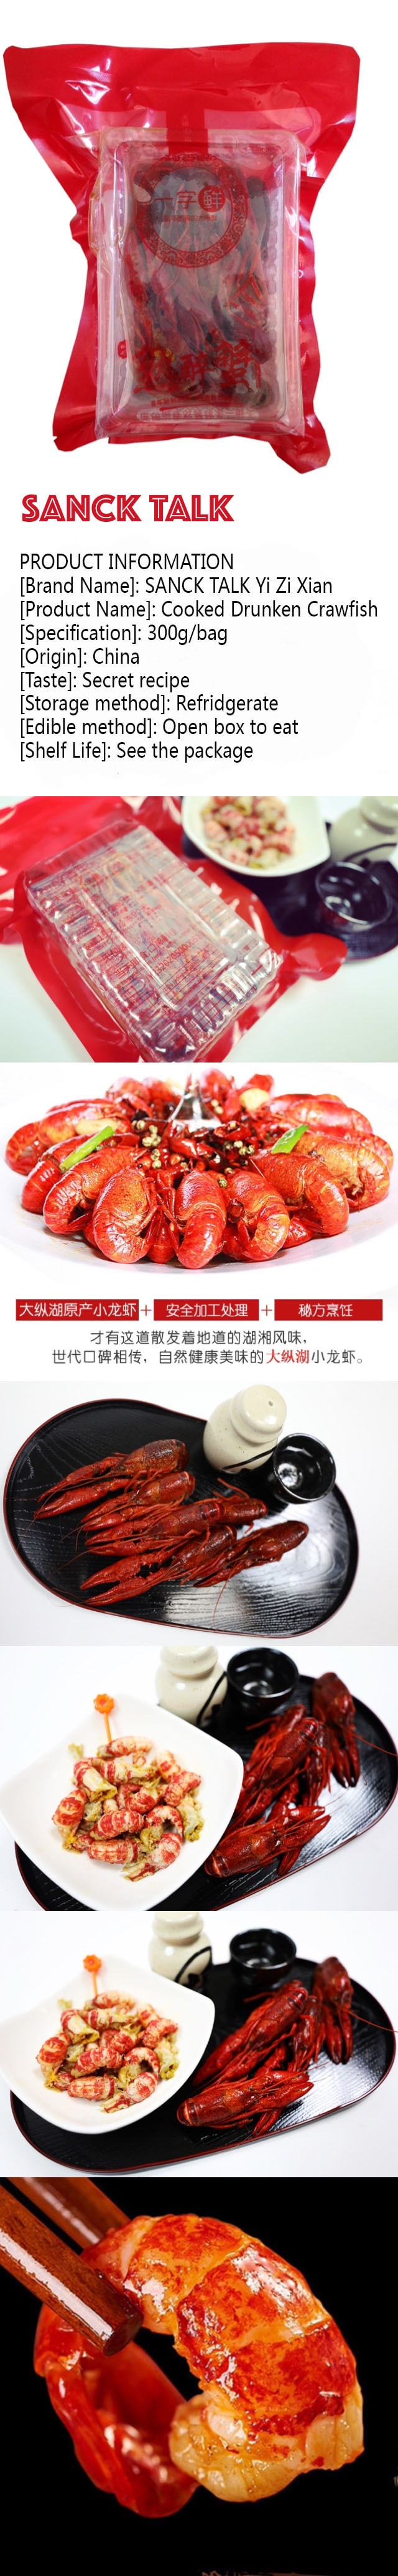 SNACK TALK Yi Zi Xian Cooked Drunken Crawfish 1lb